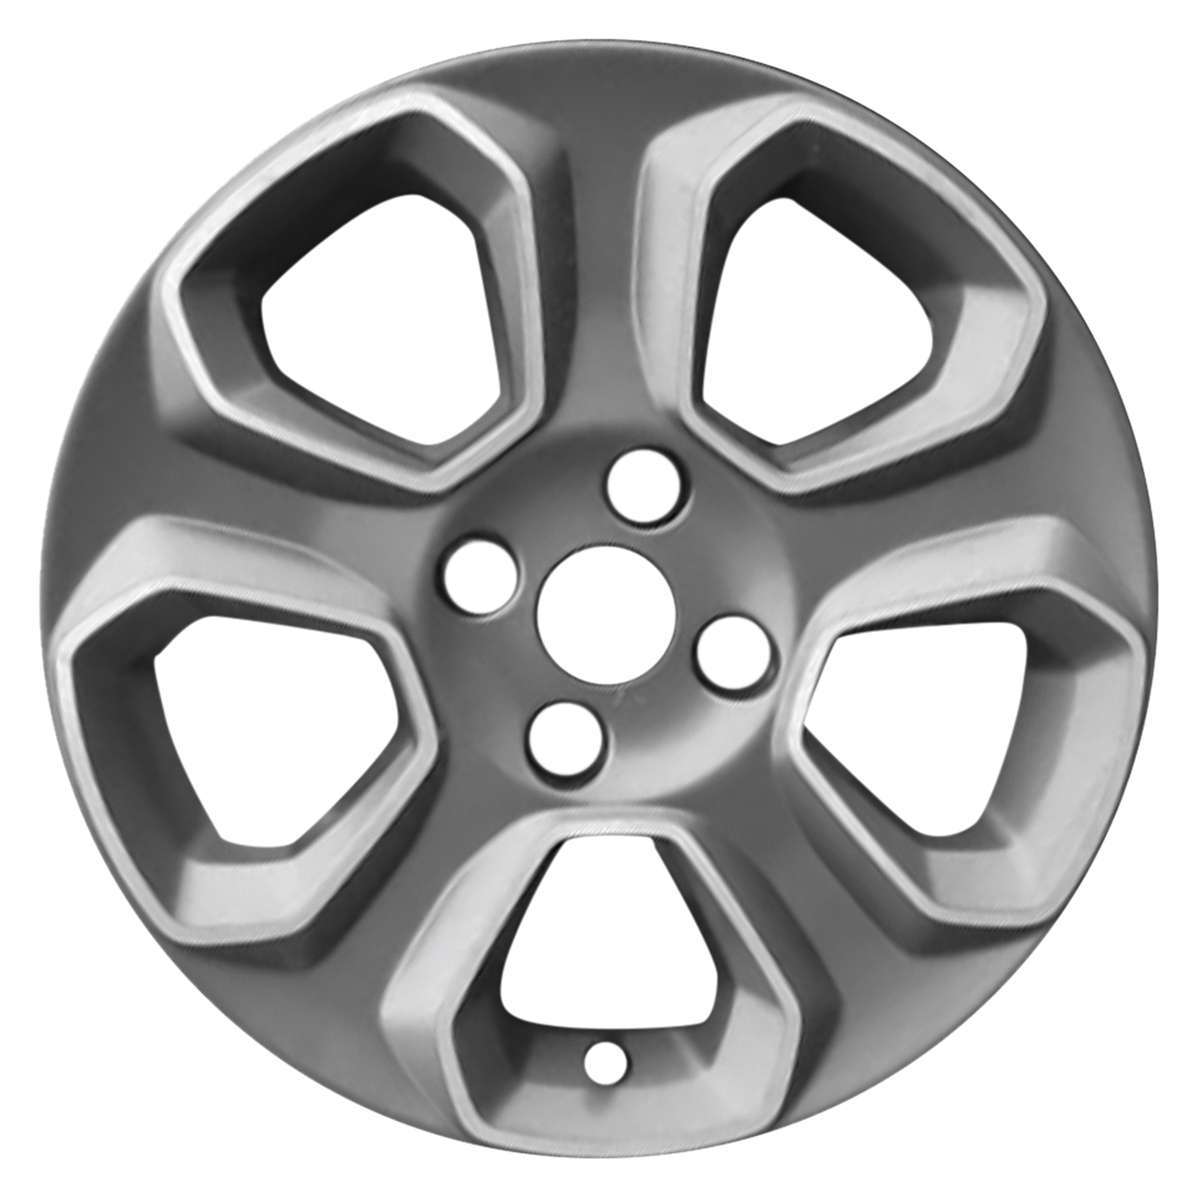 2019 Ford Ecosport 16" OEM Wheel Rim W10148C